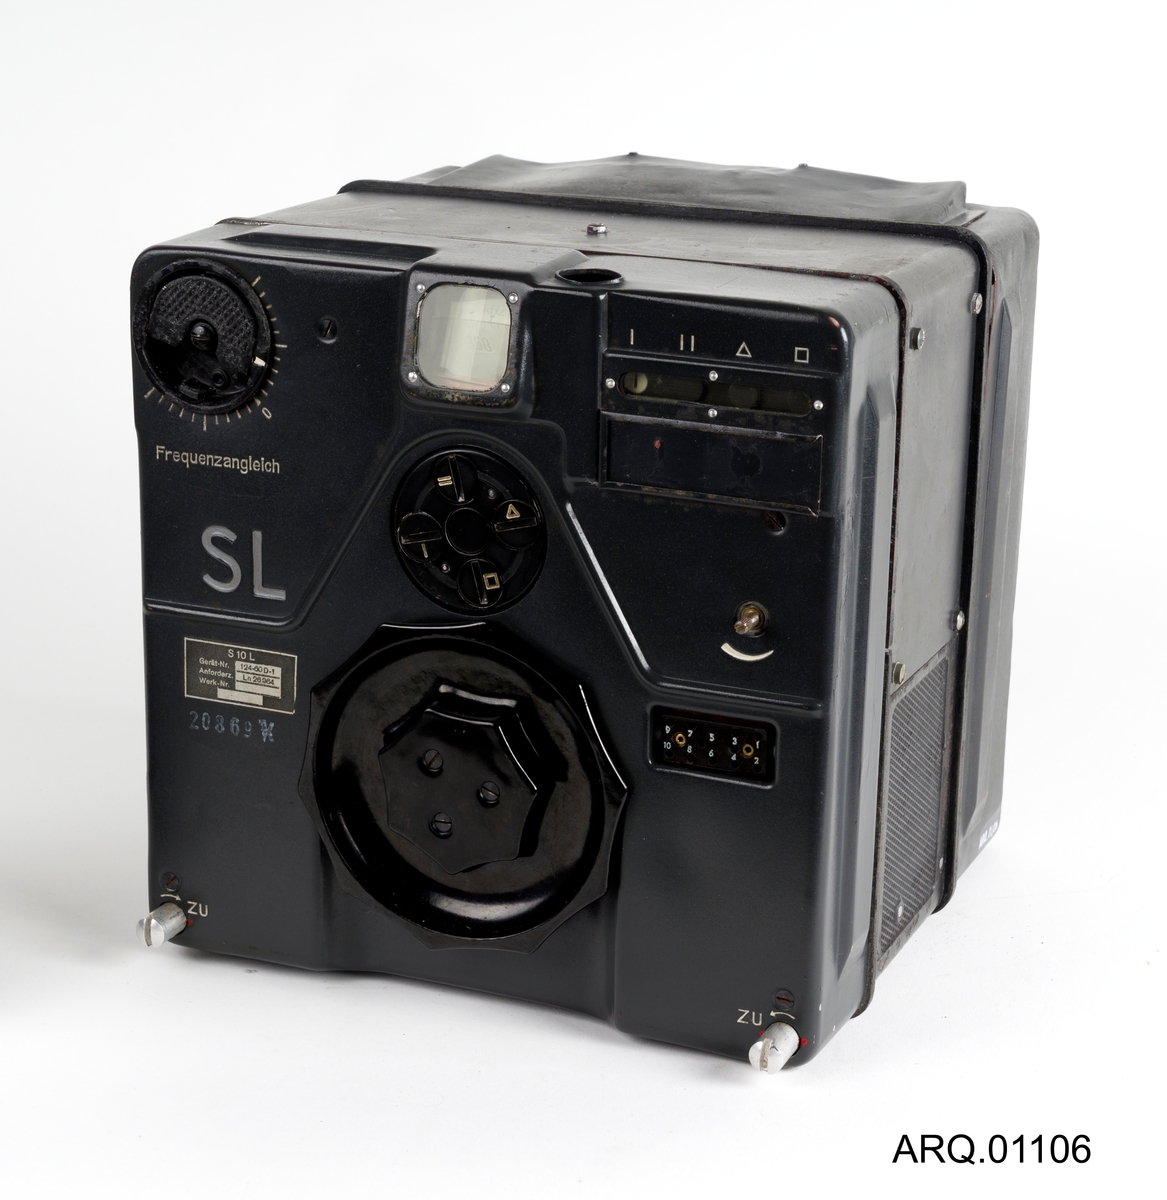 Tysk langbølge radiosender fra andre verdenskrig.
Type S 10 L